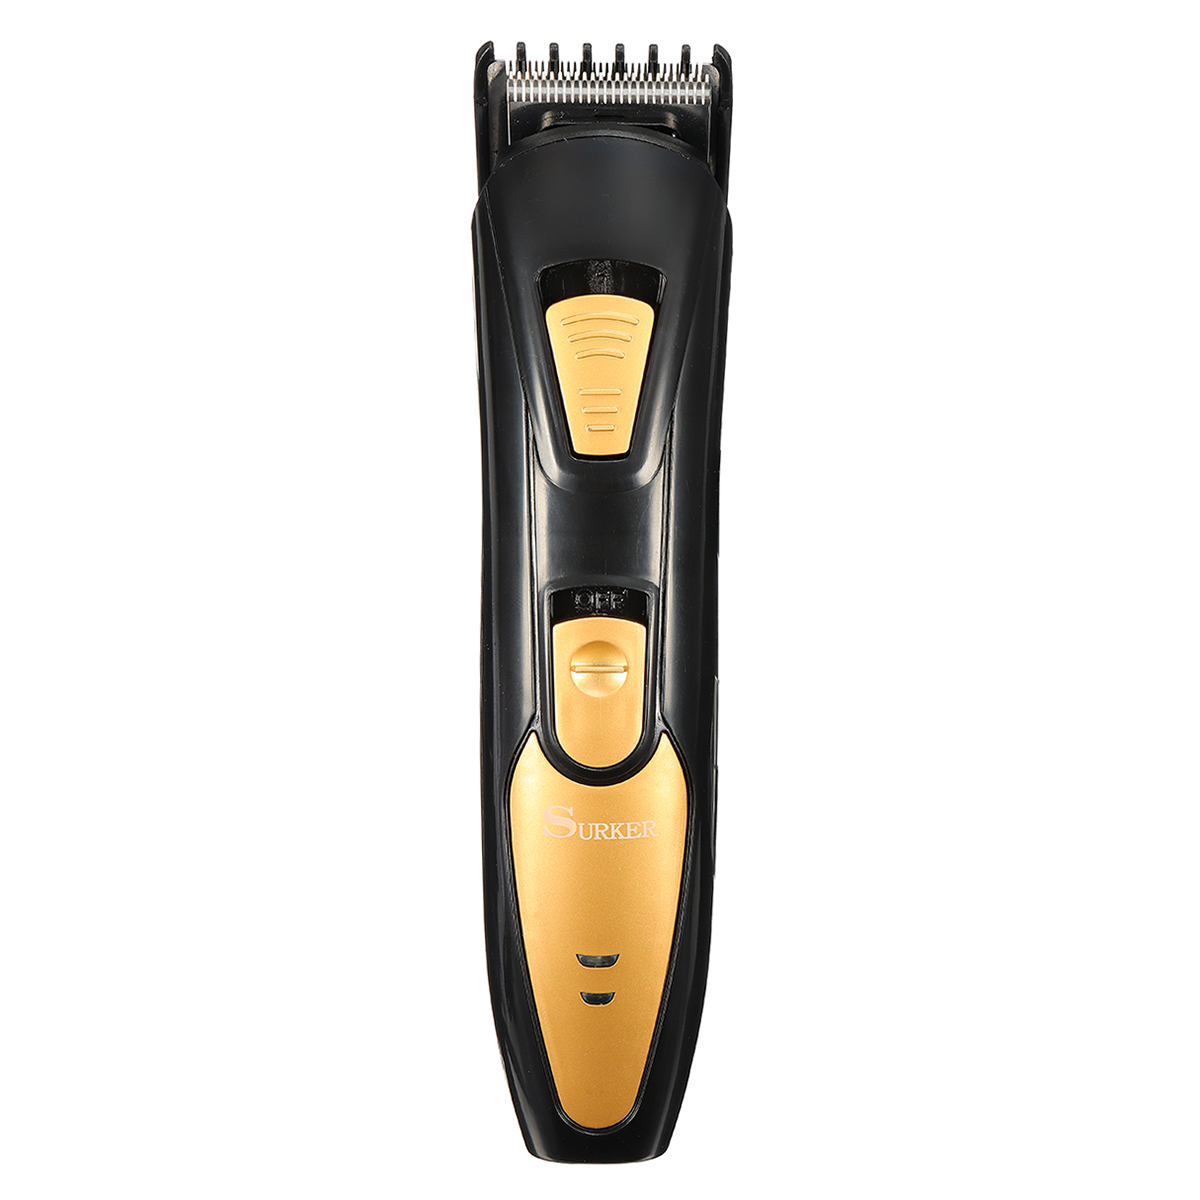 Surker-Electric-Hair-Clipper-Trimmer-Shaver-Men-Children-Barber-Salon-Home-Use-Rechargeable-220-240V-1306227